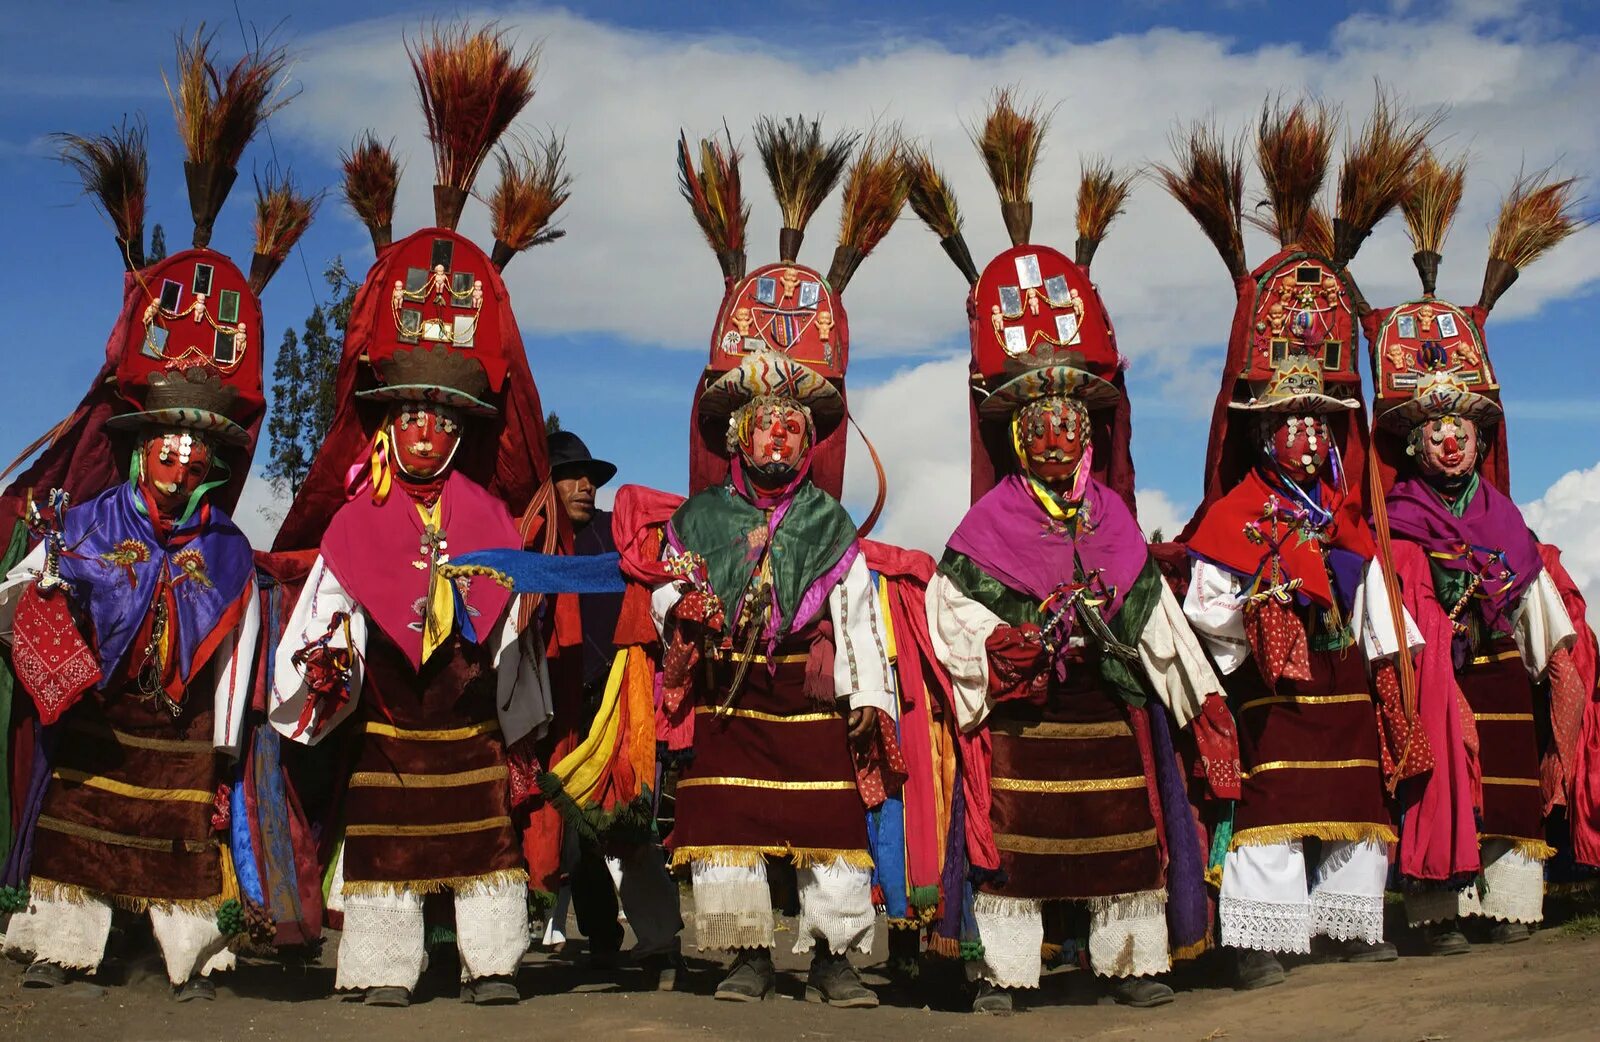 Культура и быт южной америки. Население Перу перуанцы. Чили население индейцы. Традиции Перу. Перу культура и традиции.